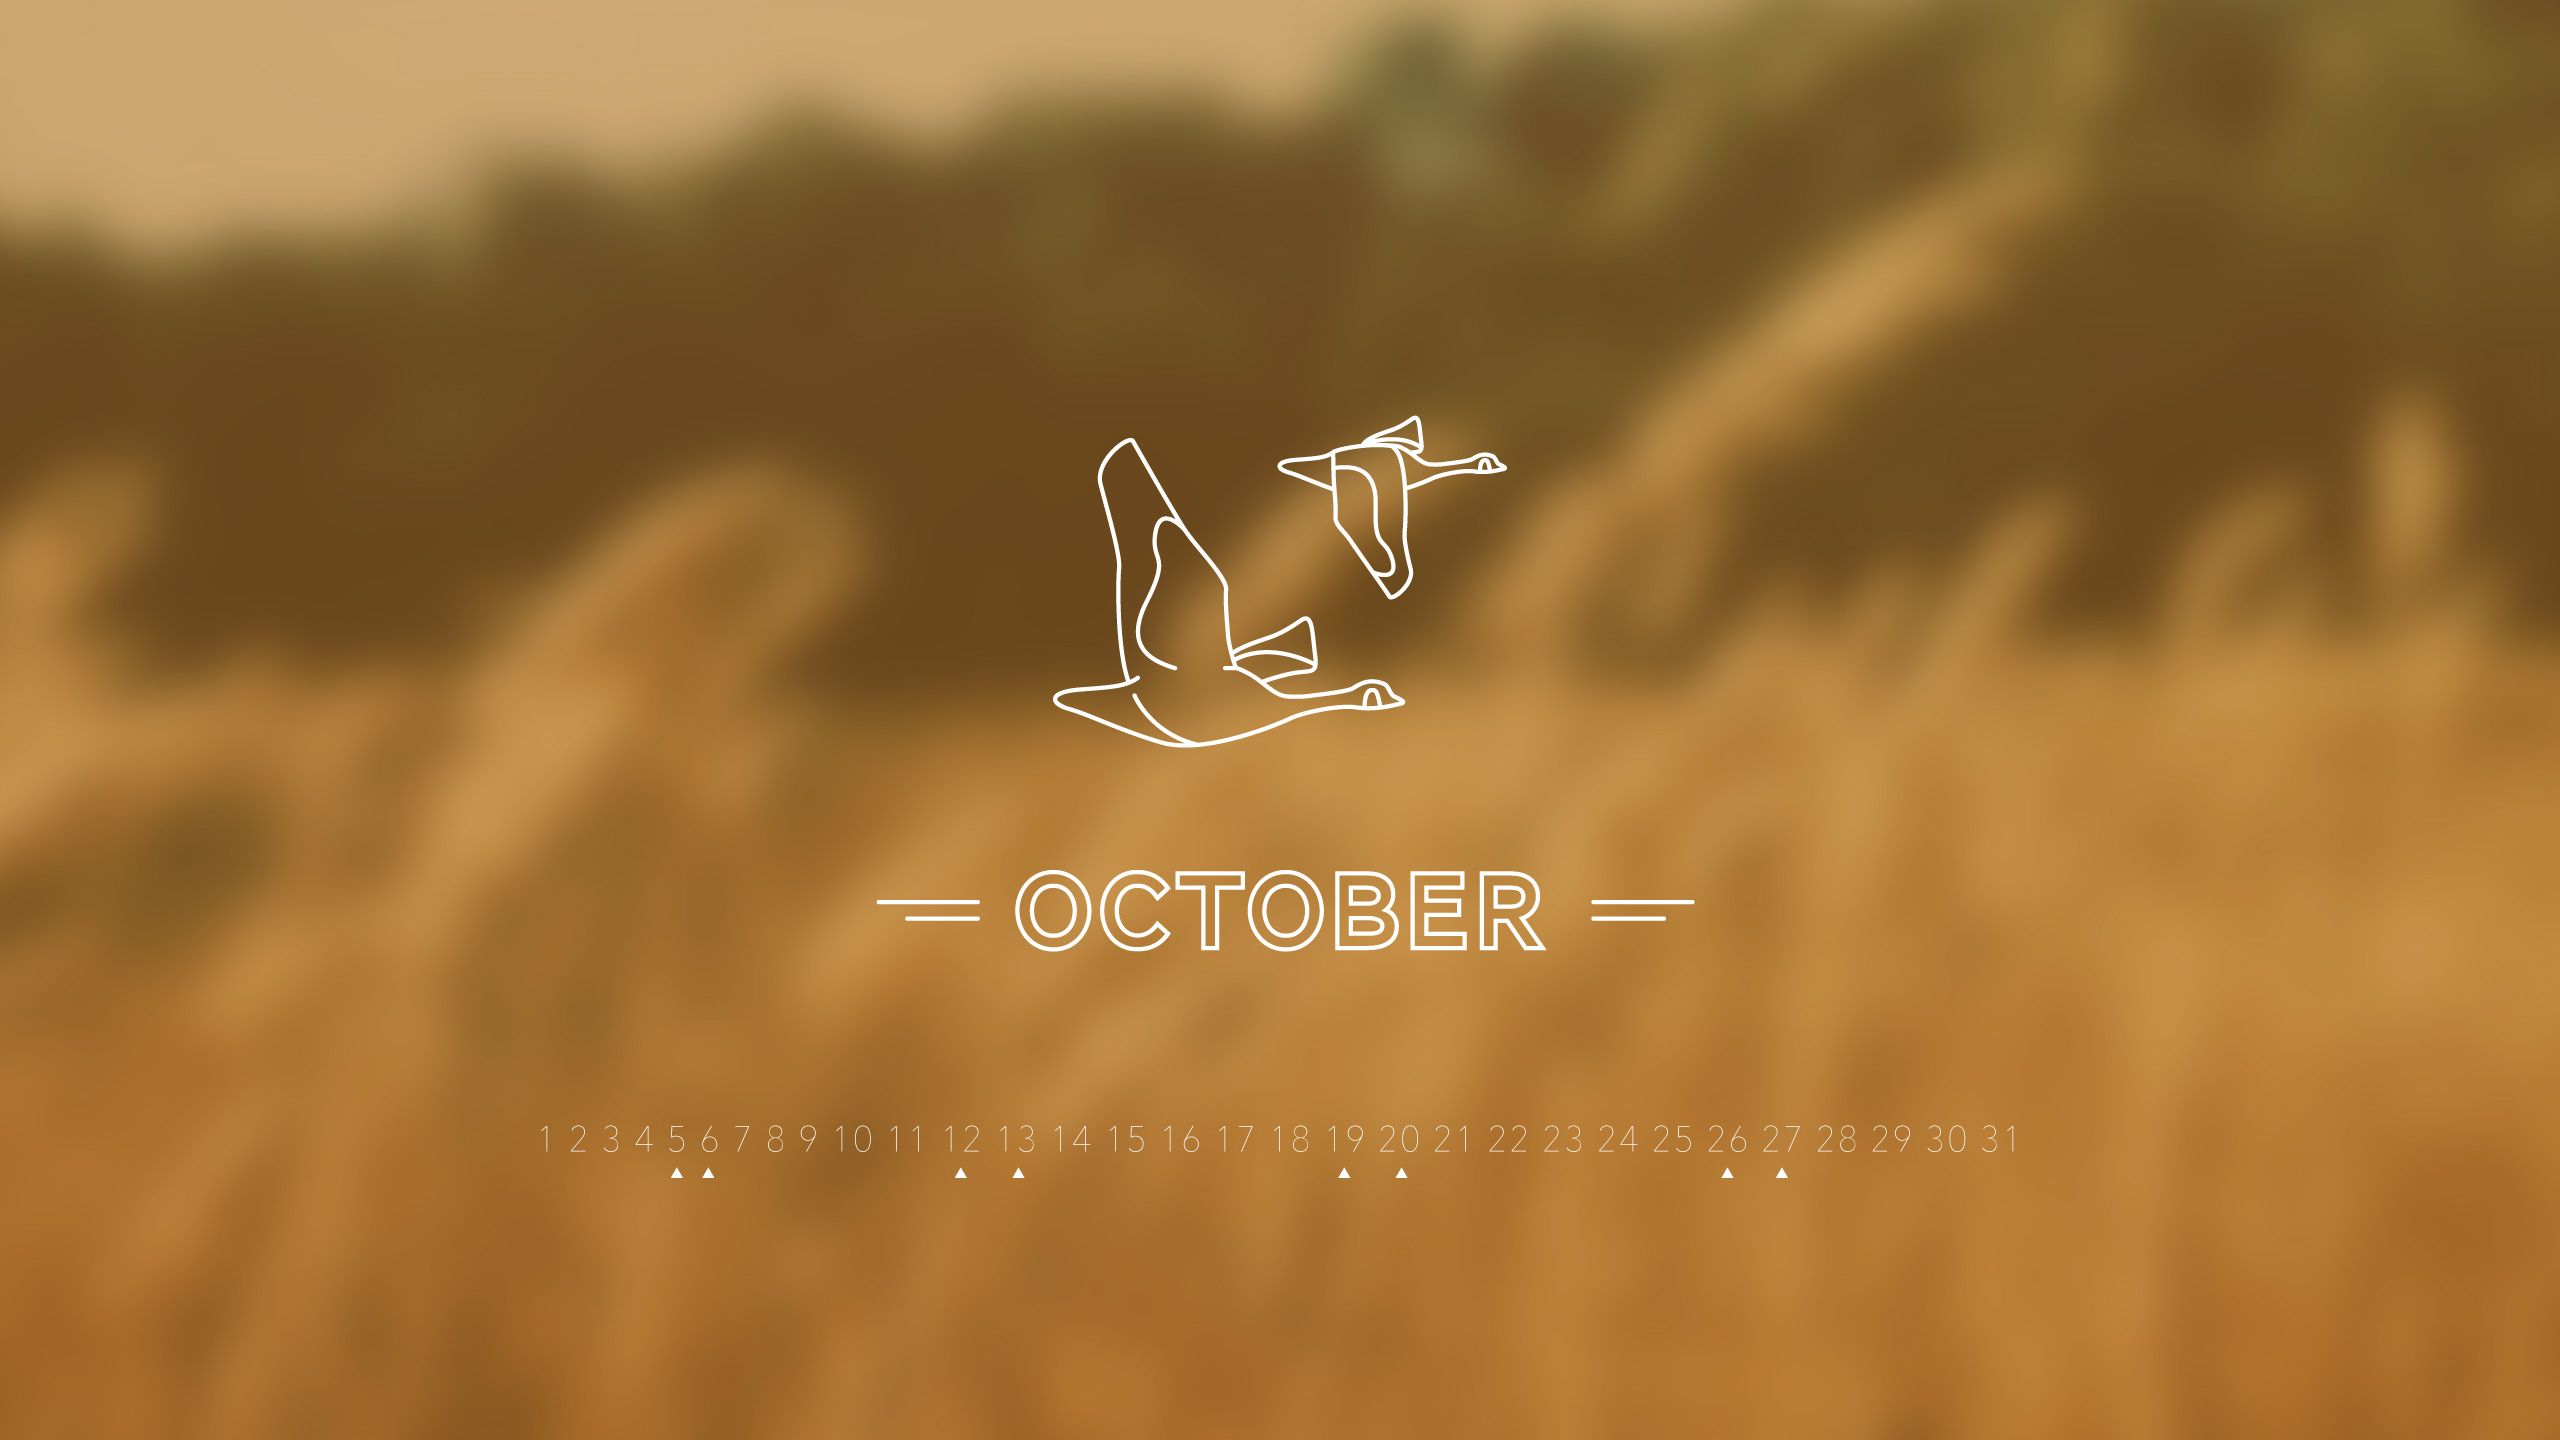 October 2013 Desktop Calendar Wallpaper | Paper Leaf Design